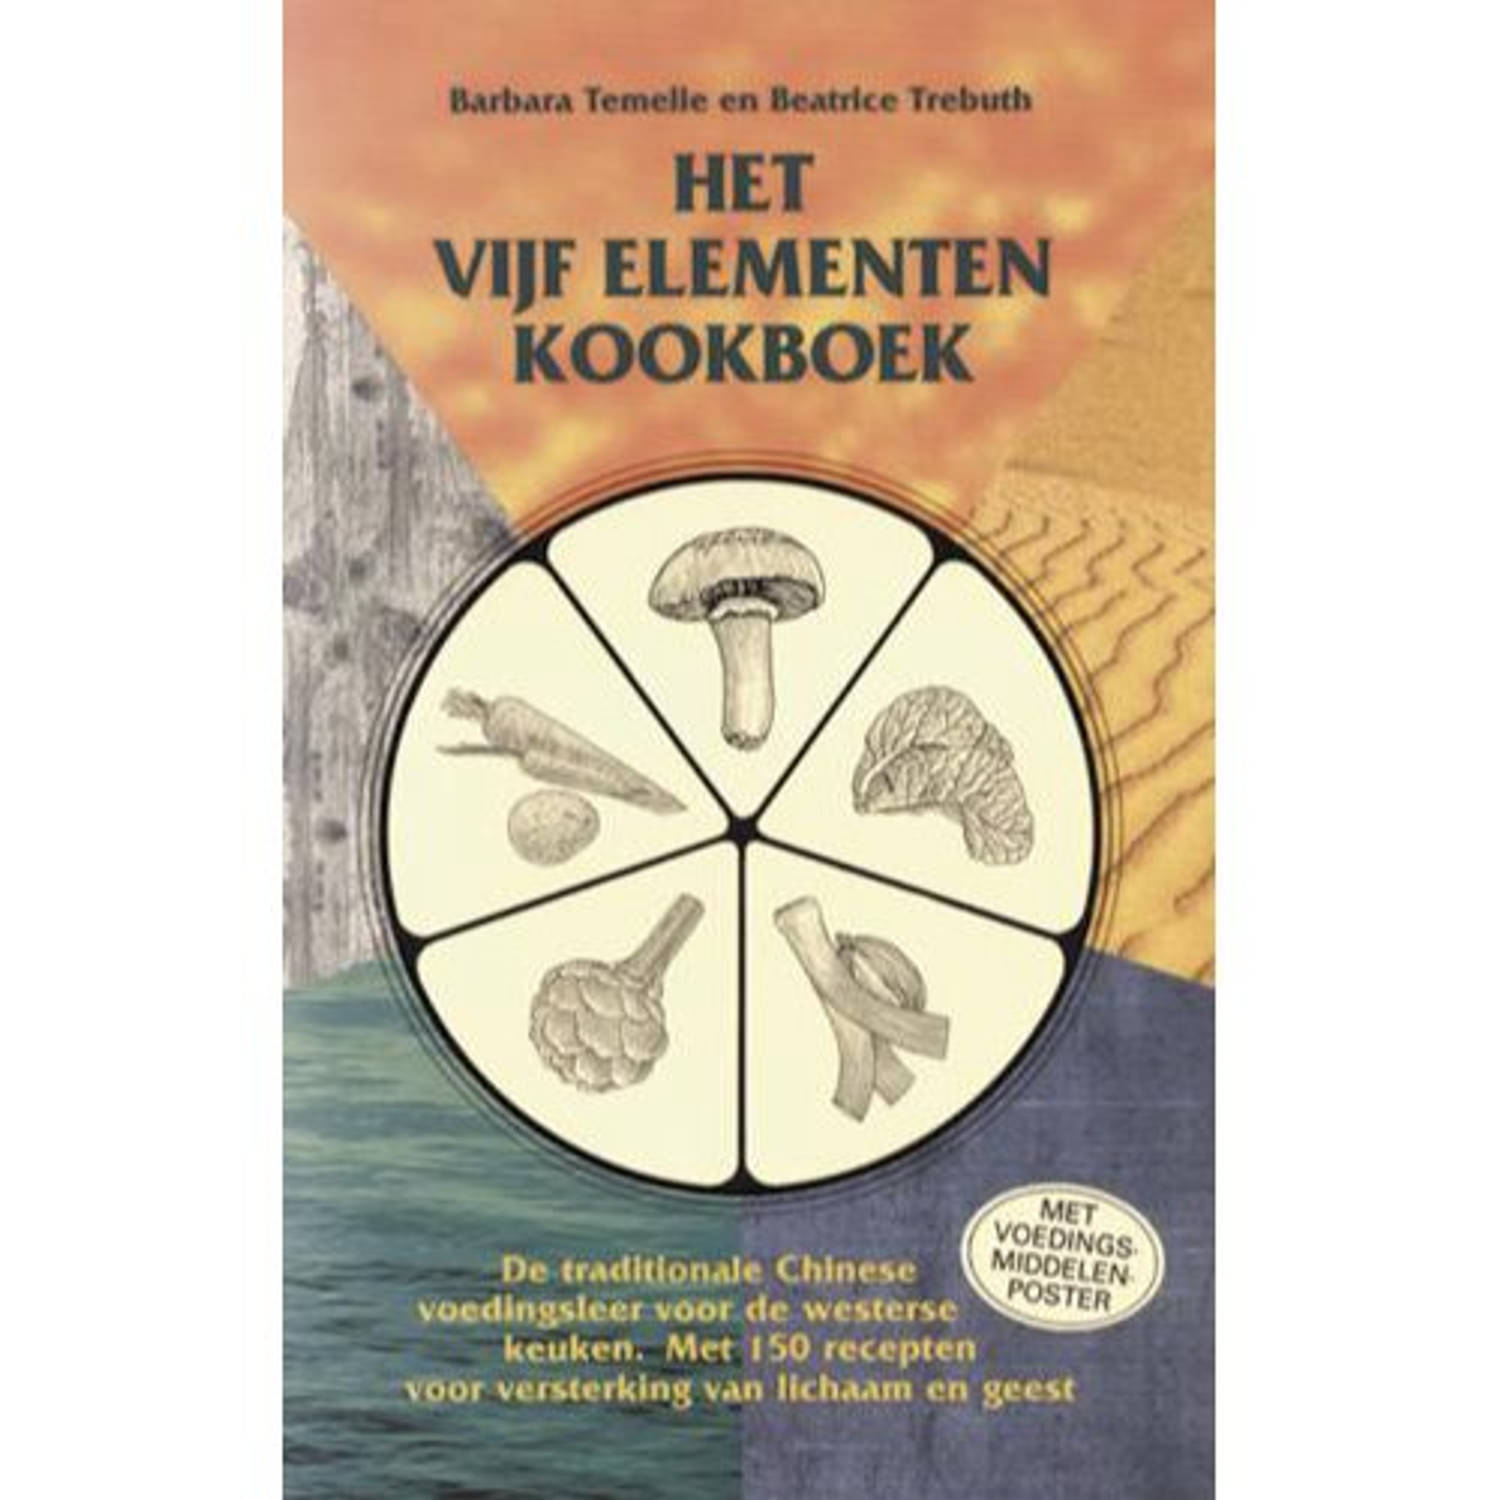 Het vijf elementen kookboek